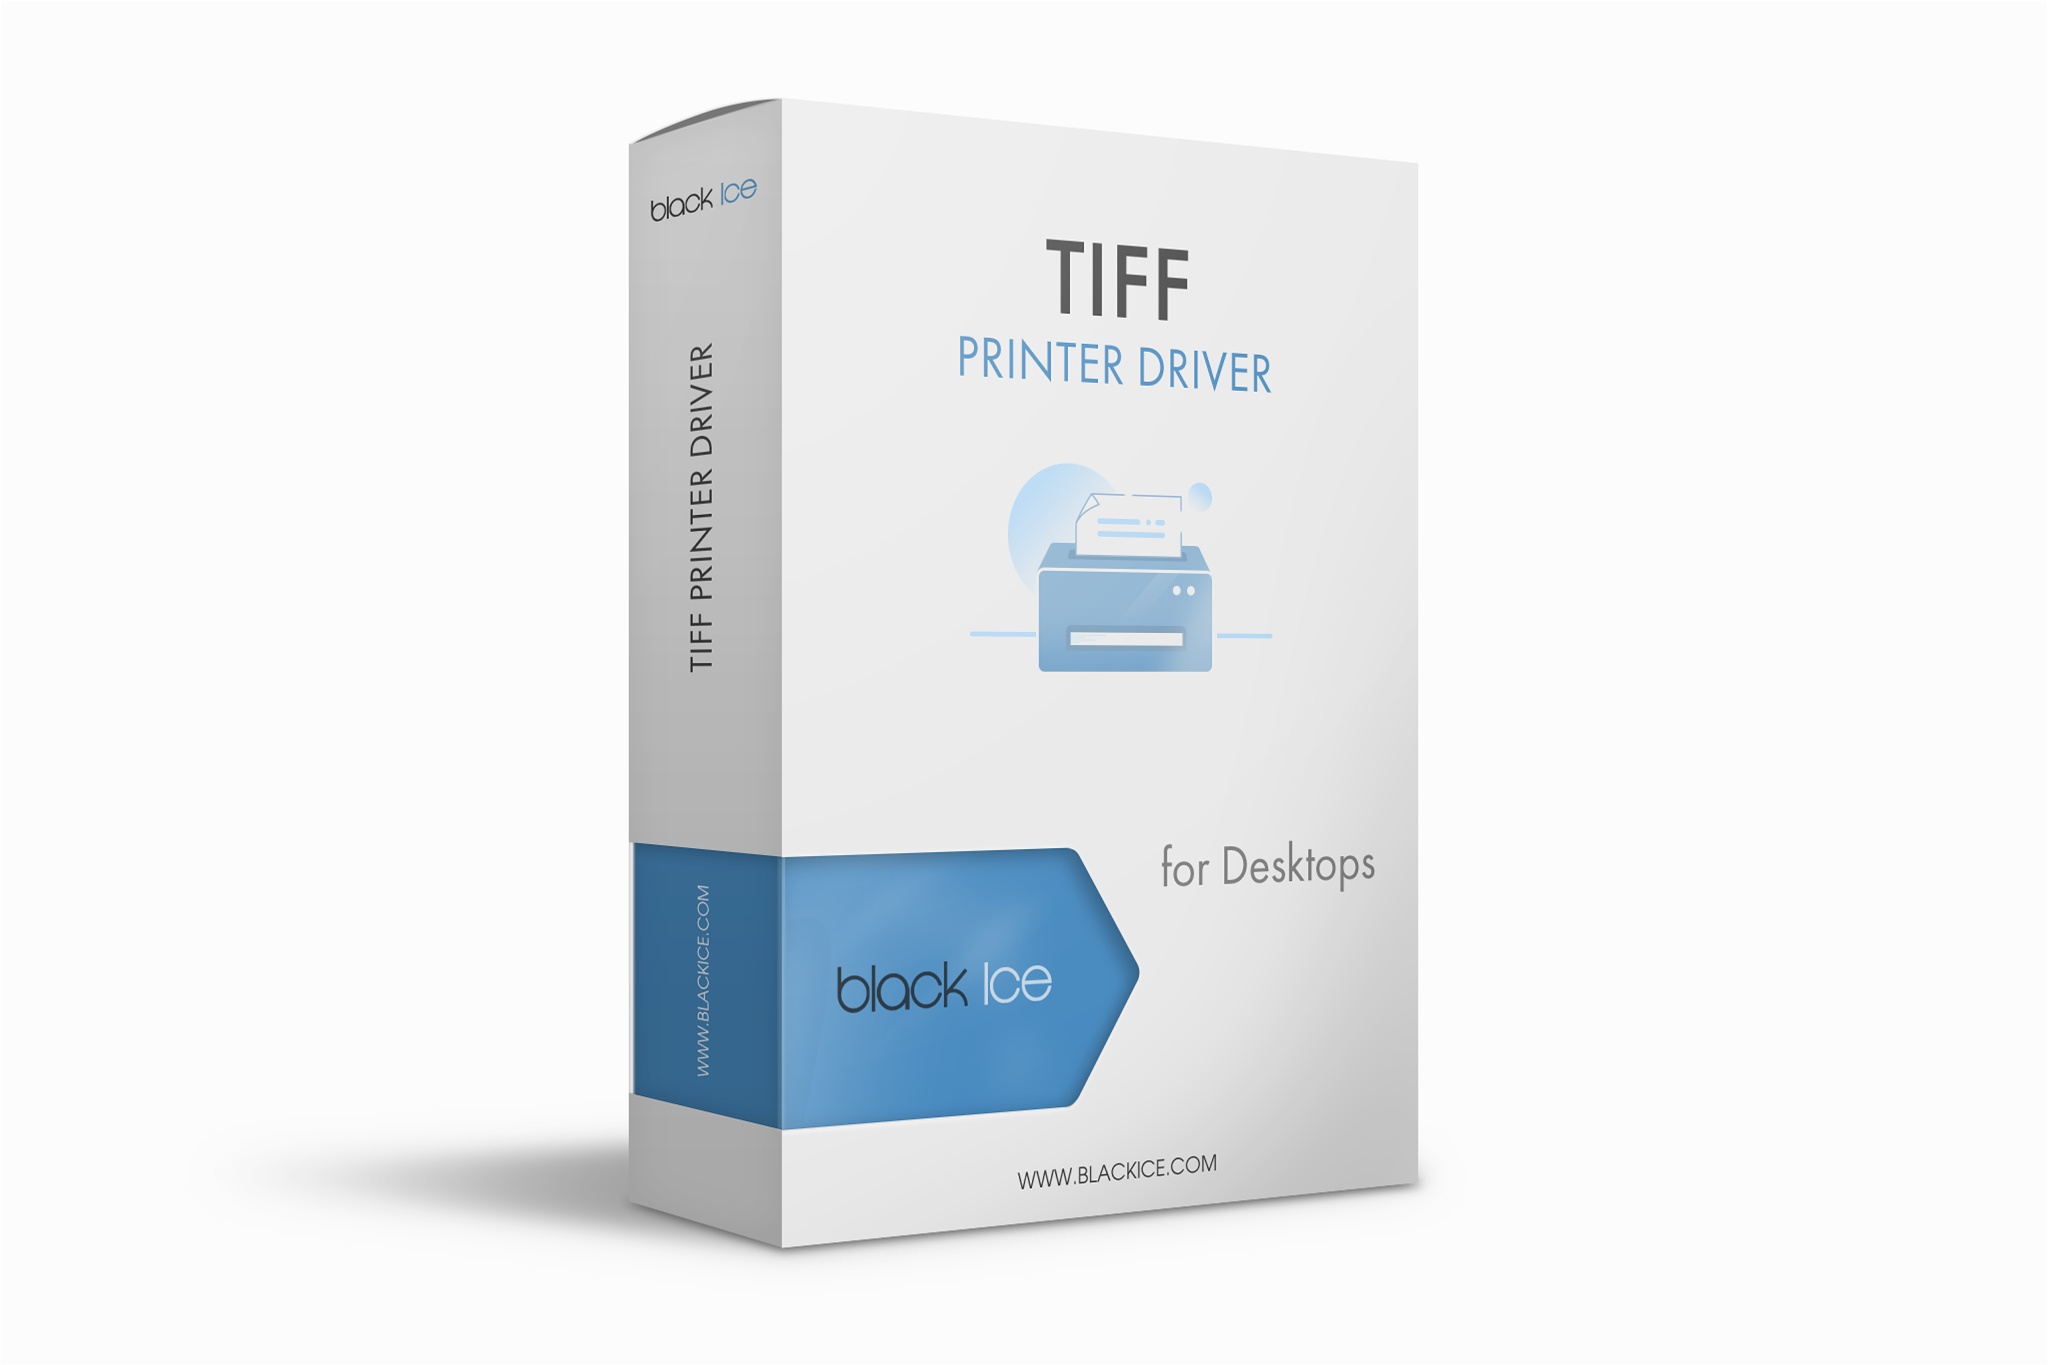 TIFF/Monochrome Printer Driver Subscription (Single License and 4 multi-printers or ports)